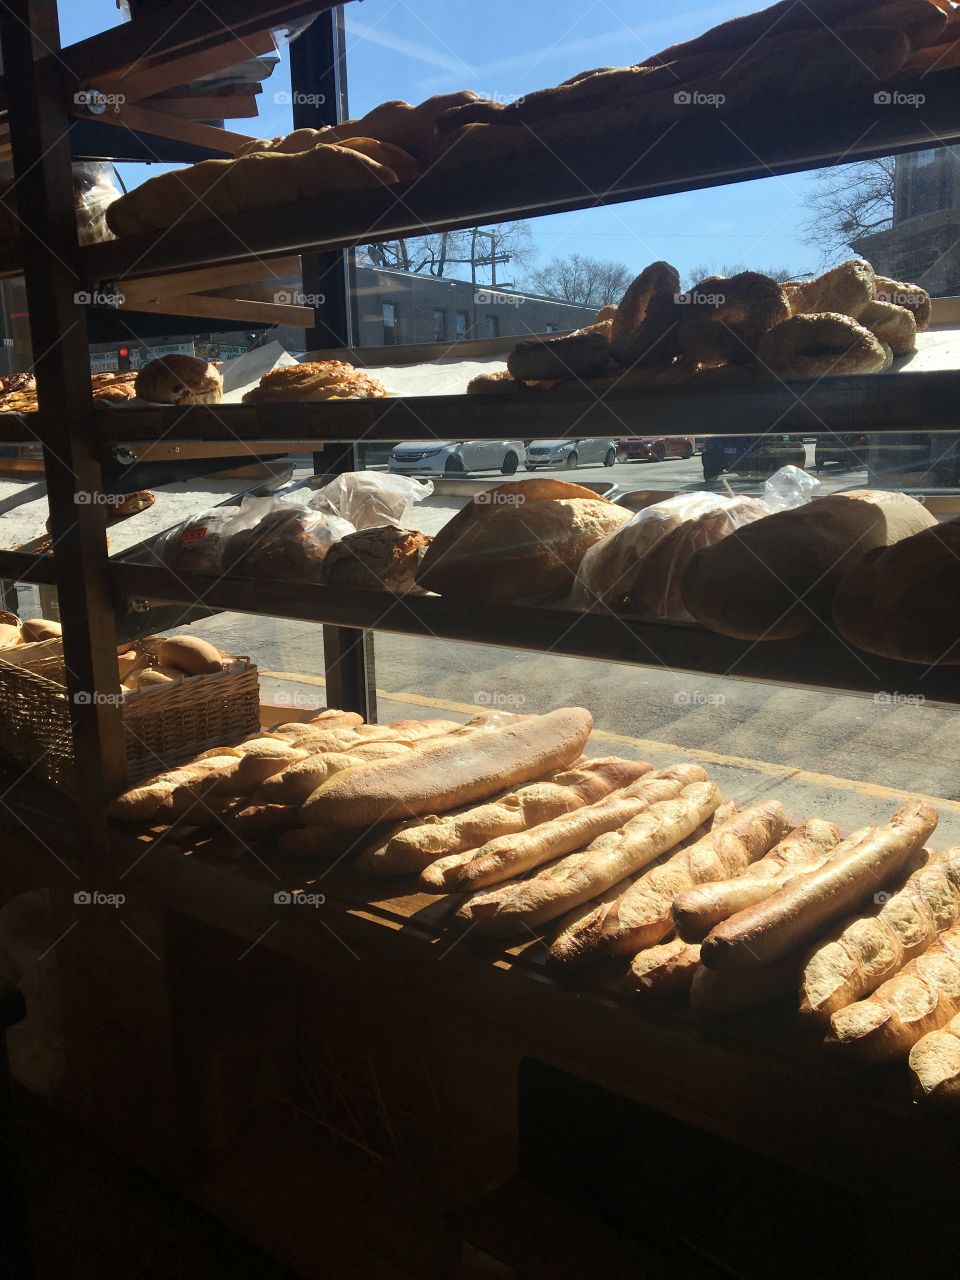 Bread variations